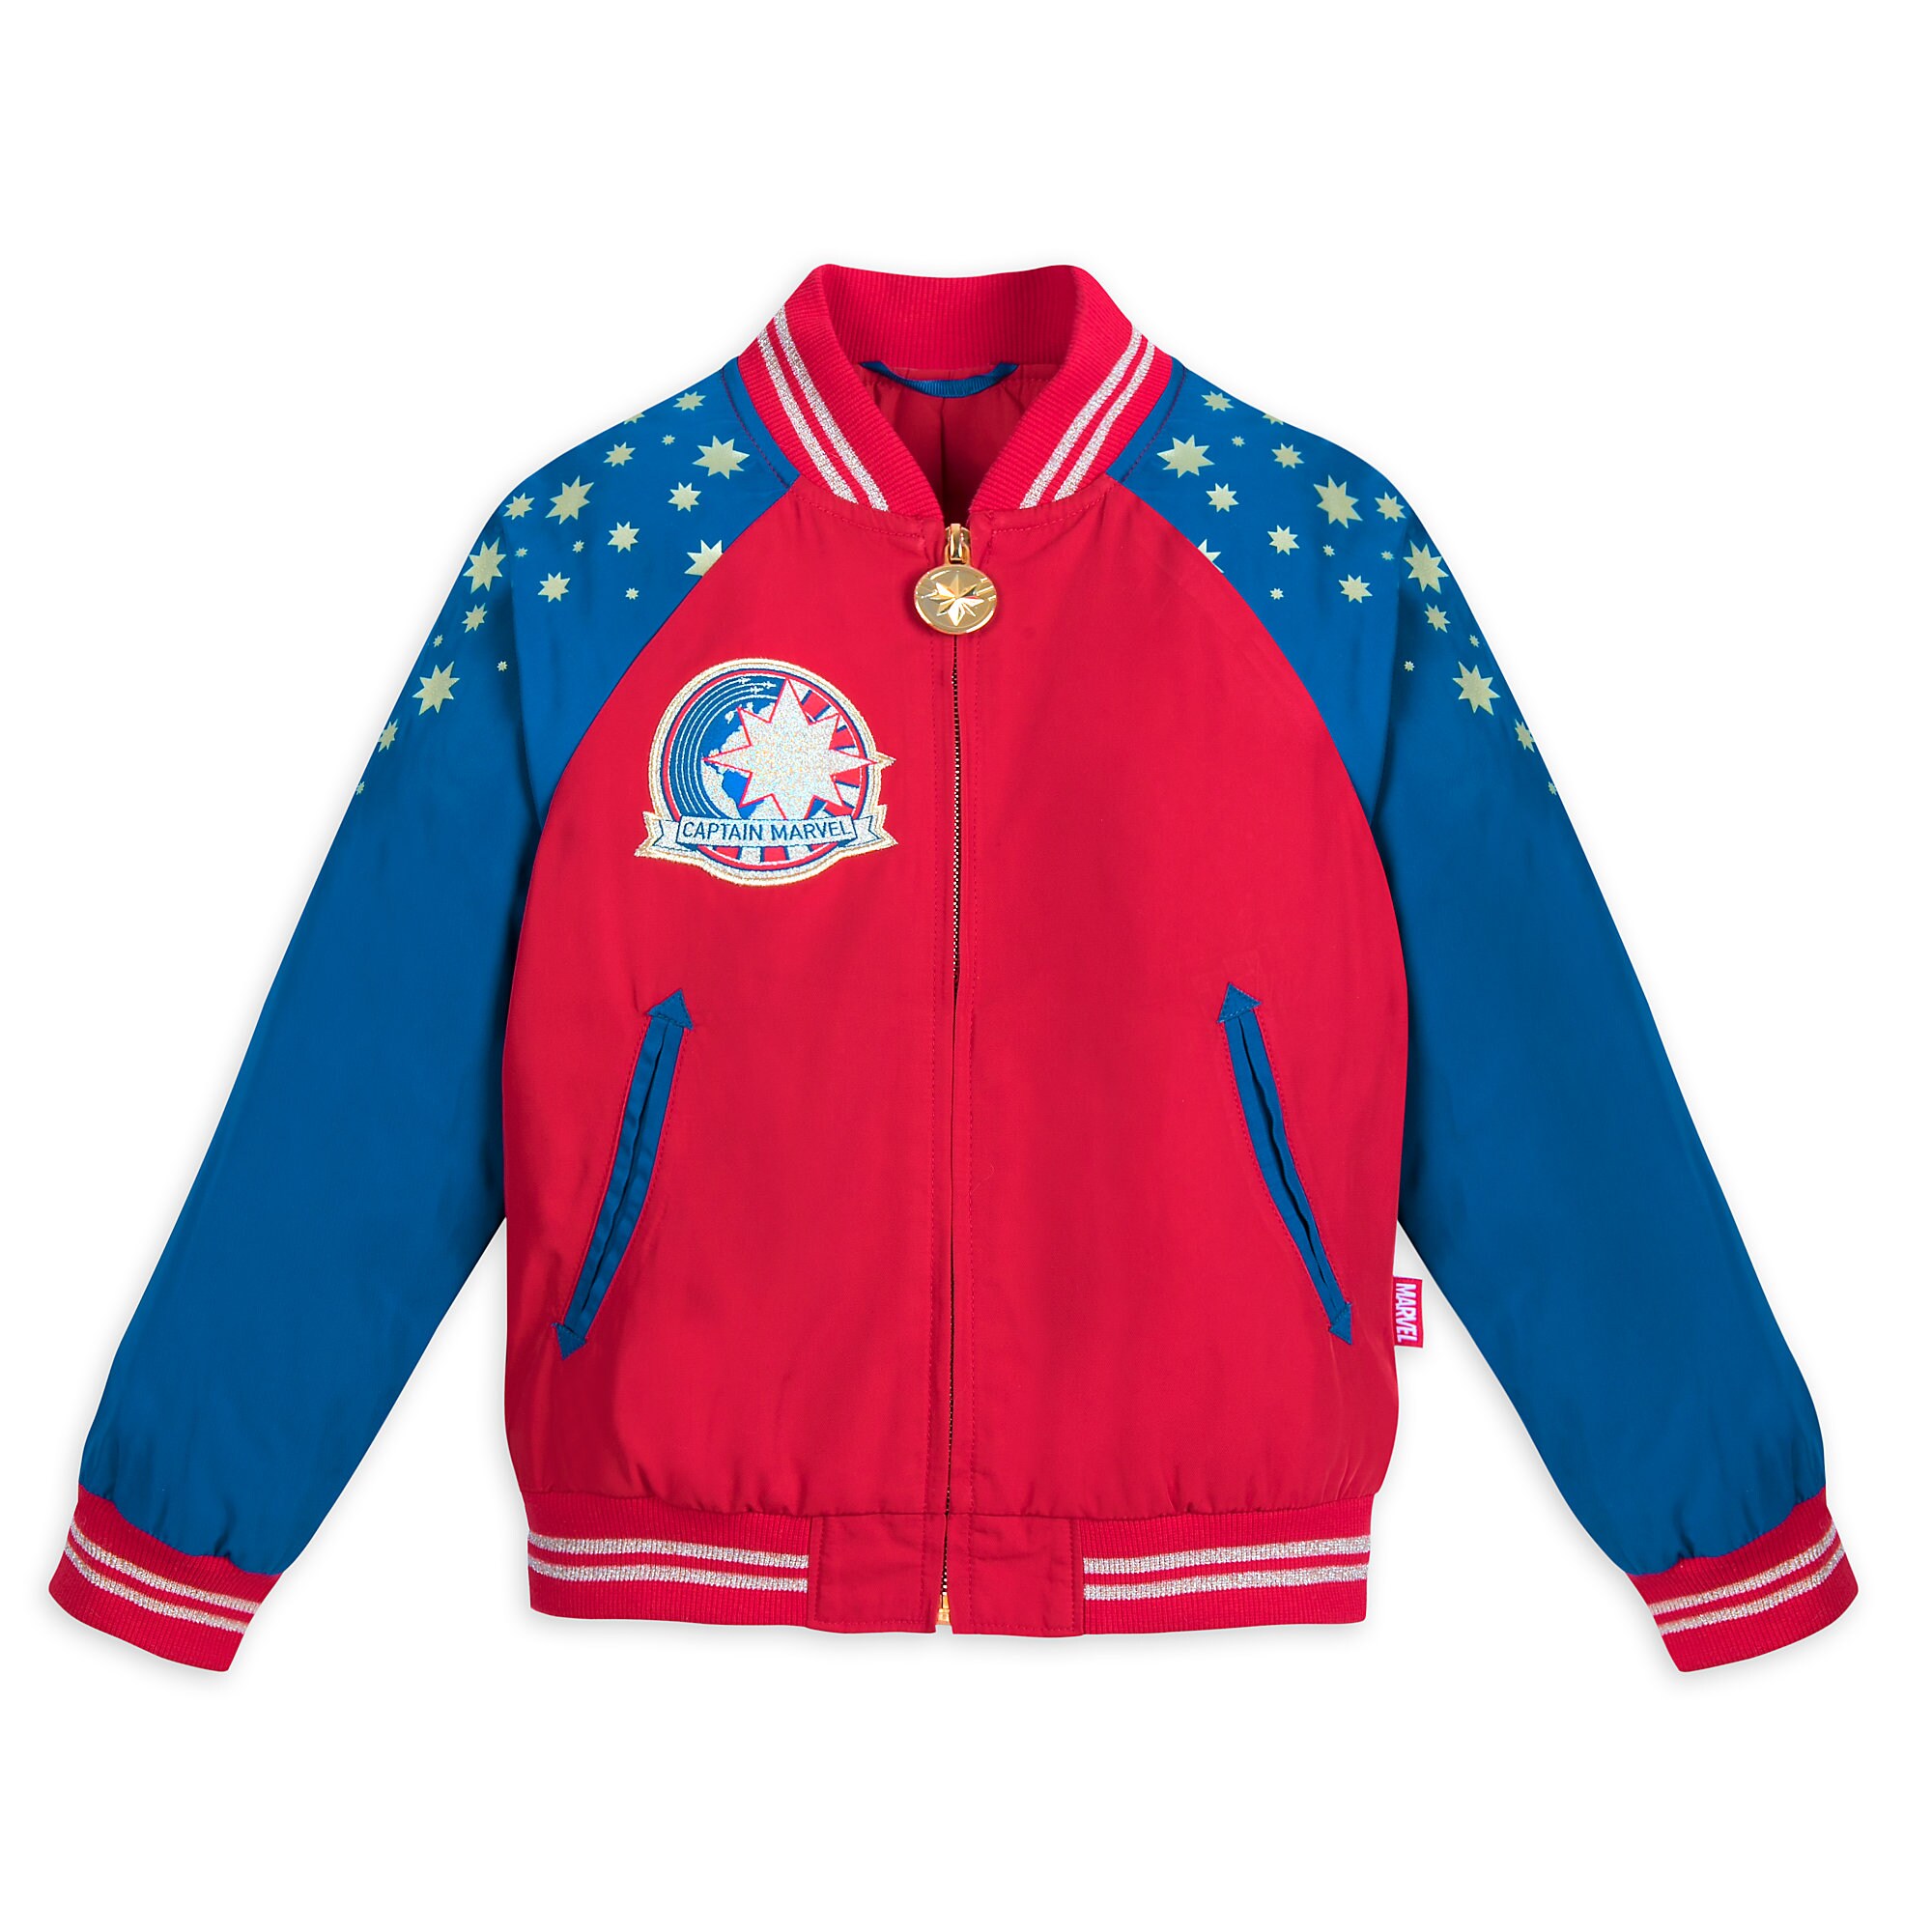 Marvel's Captain Marvel Jacket for Kids